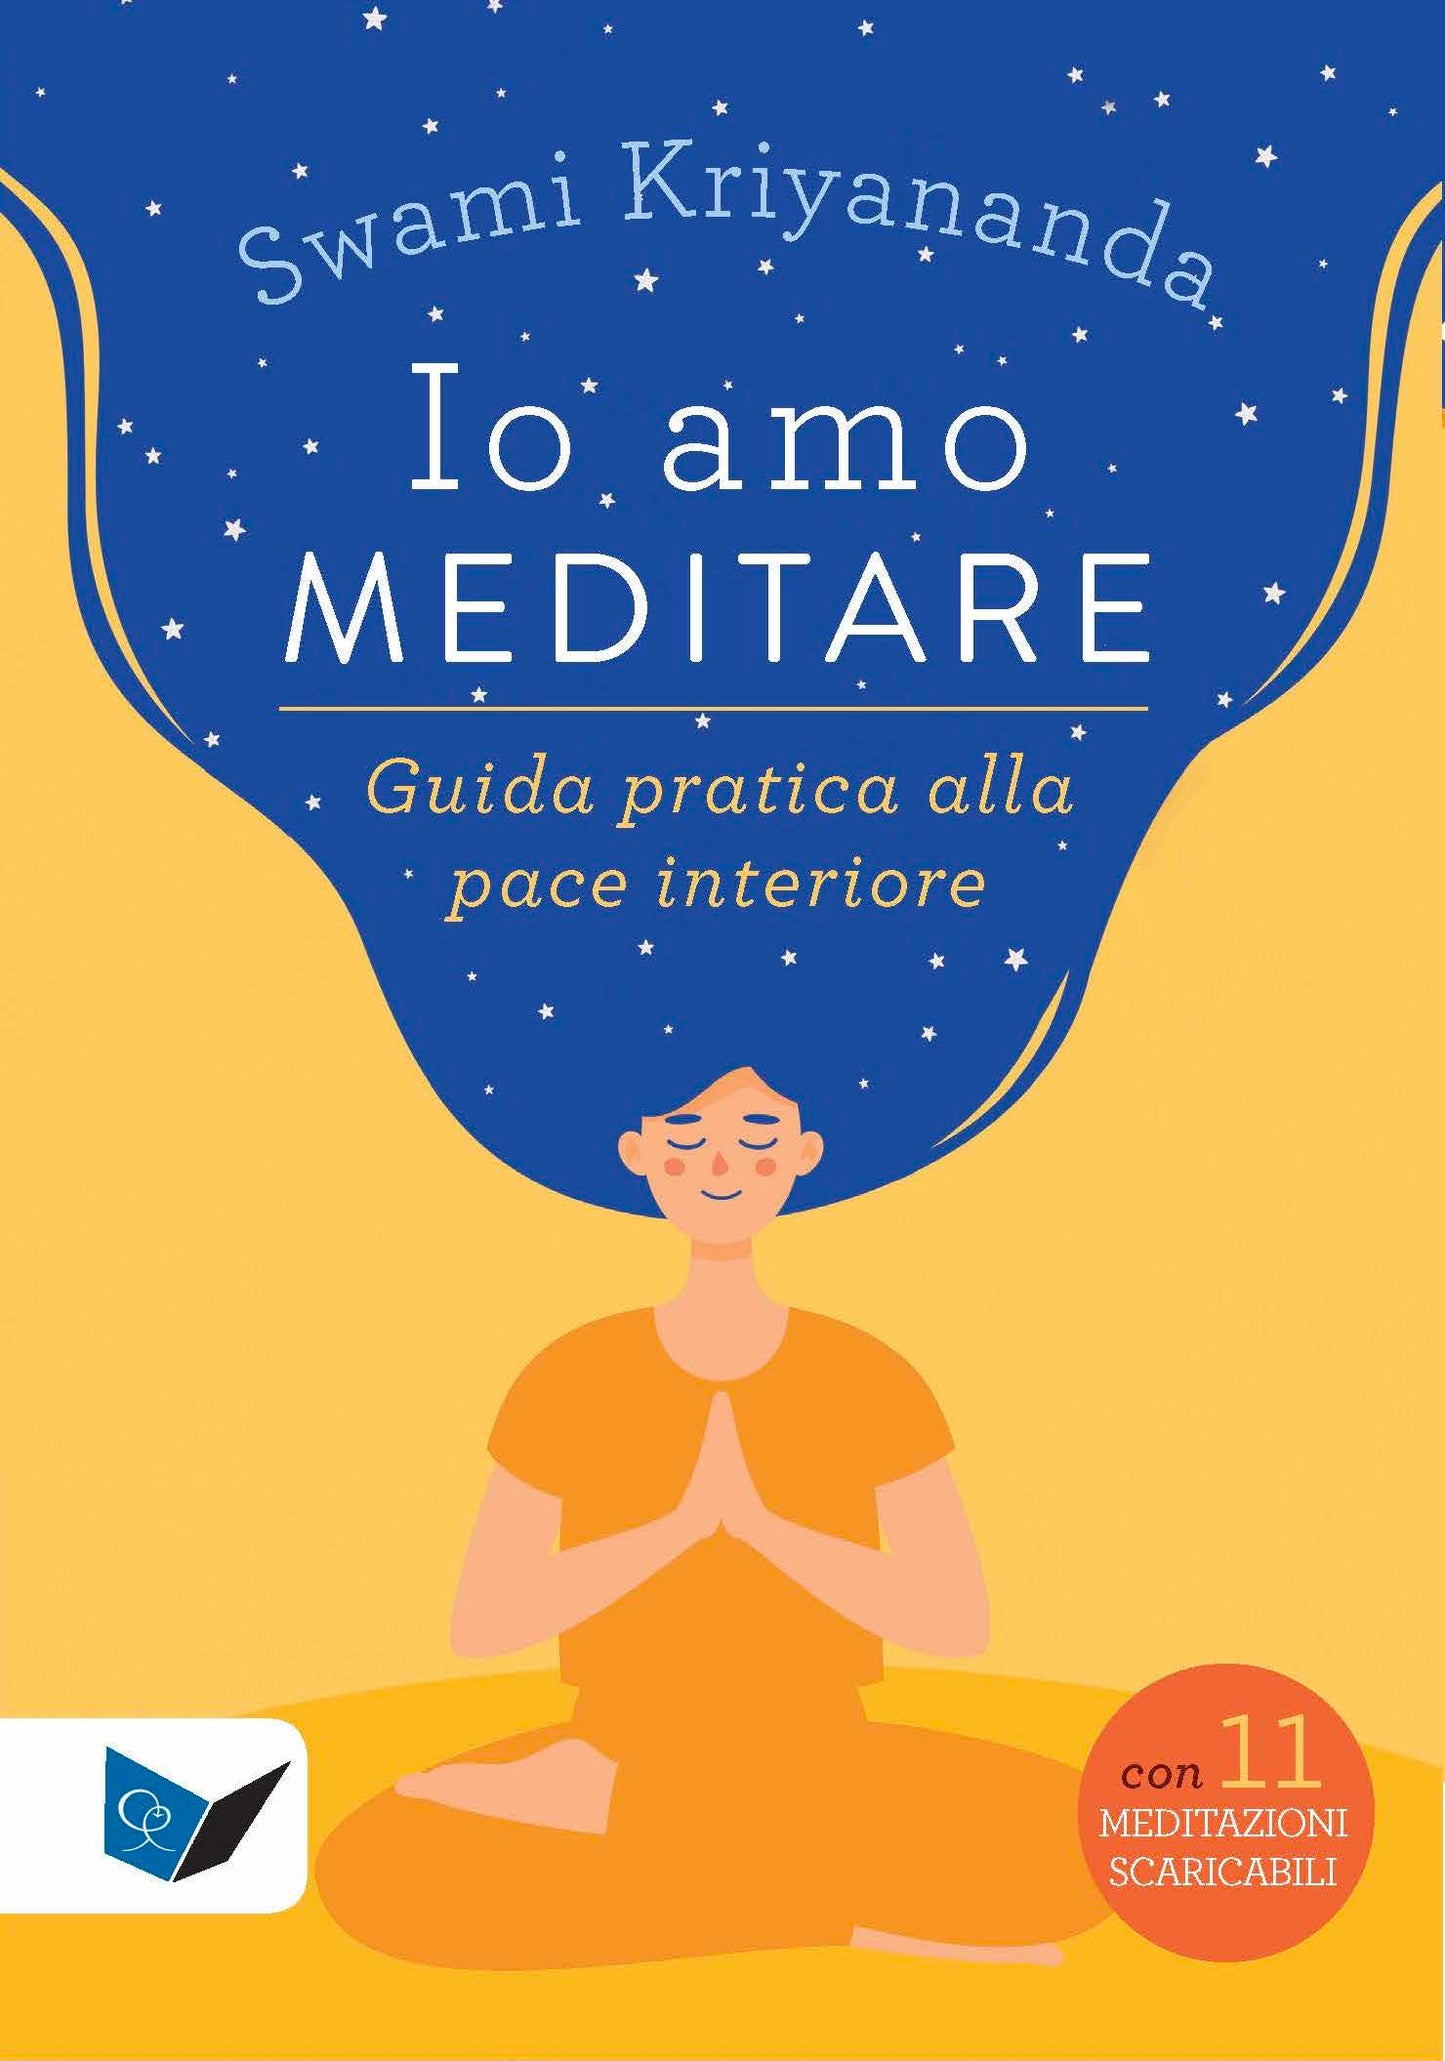 Io amo meditare. Guida pratica alla pace interiore - Con 11 meditazioni scaricabili